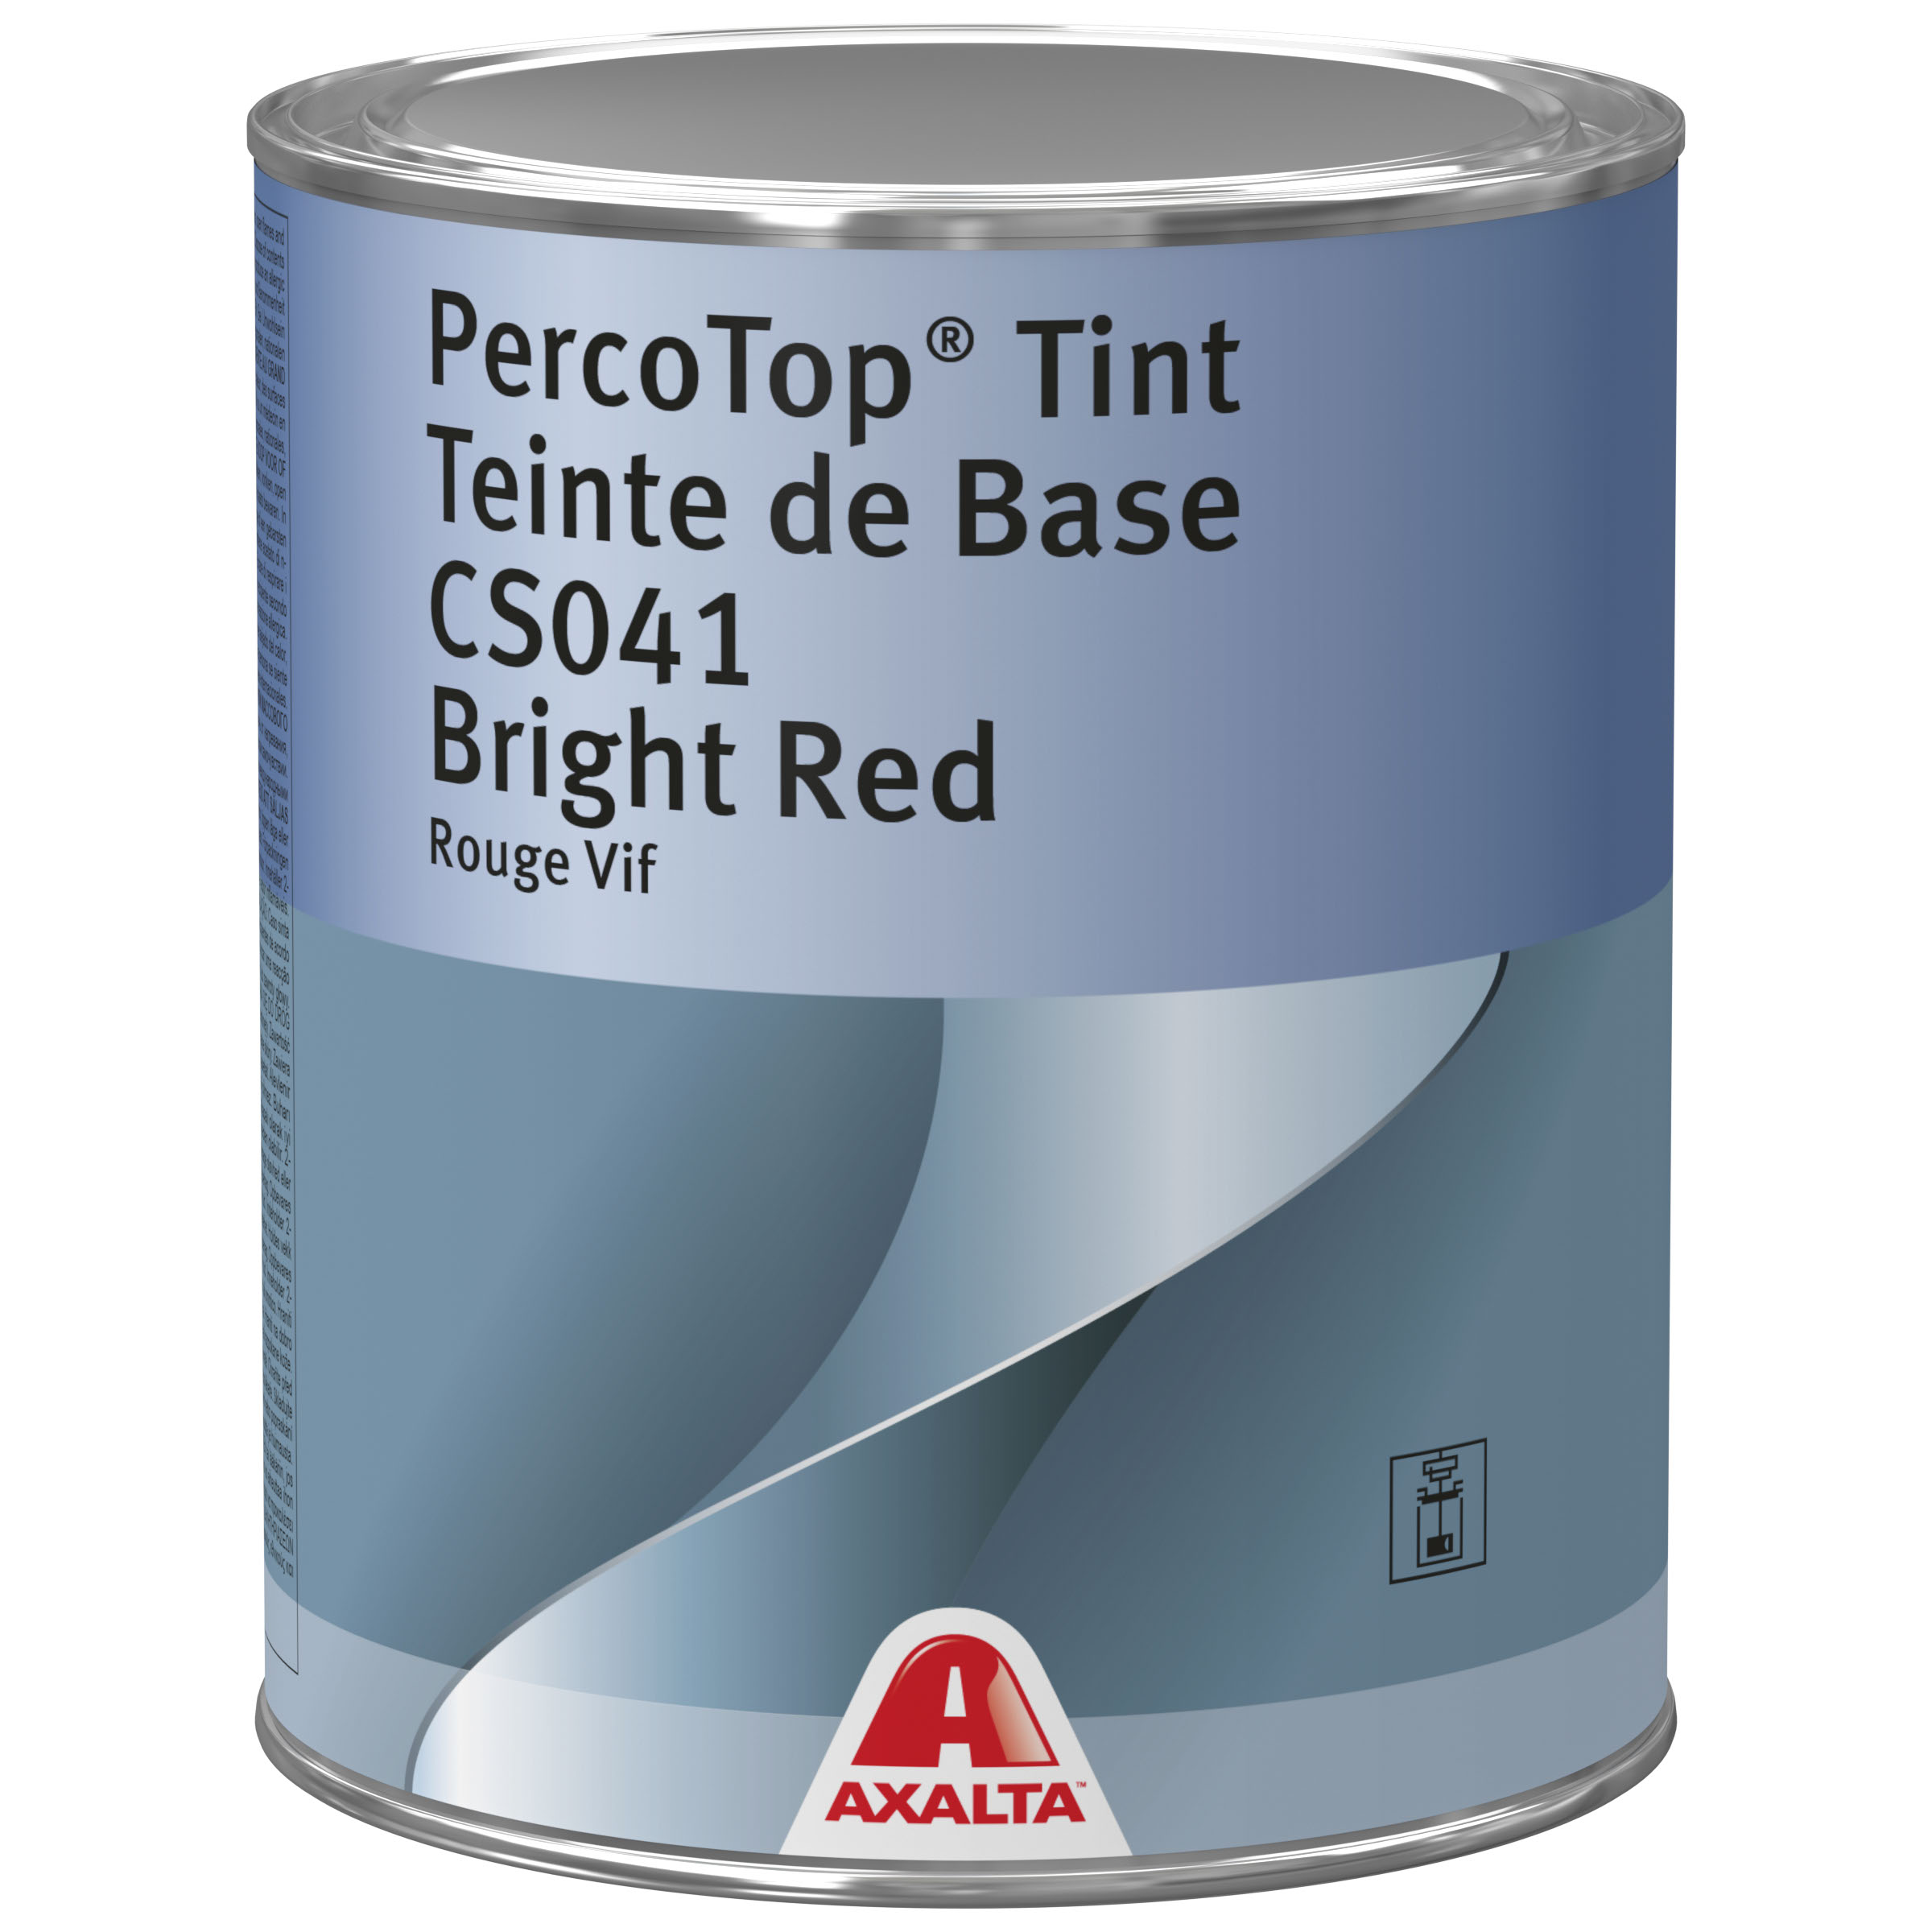 Axalta PercoTop CS041 Tint Bright Red